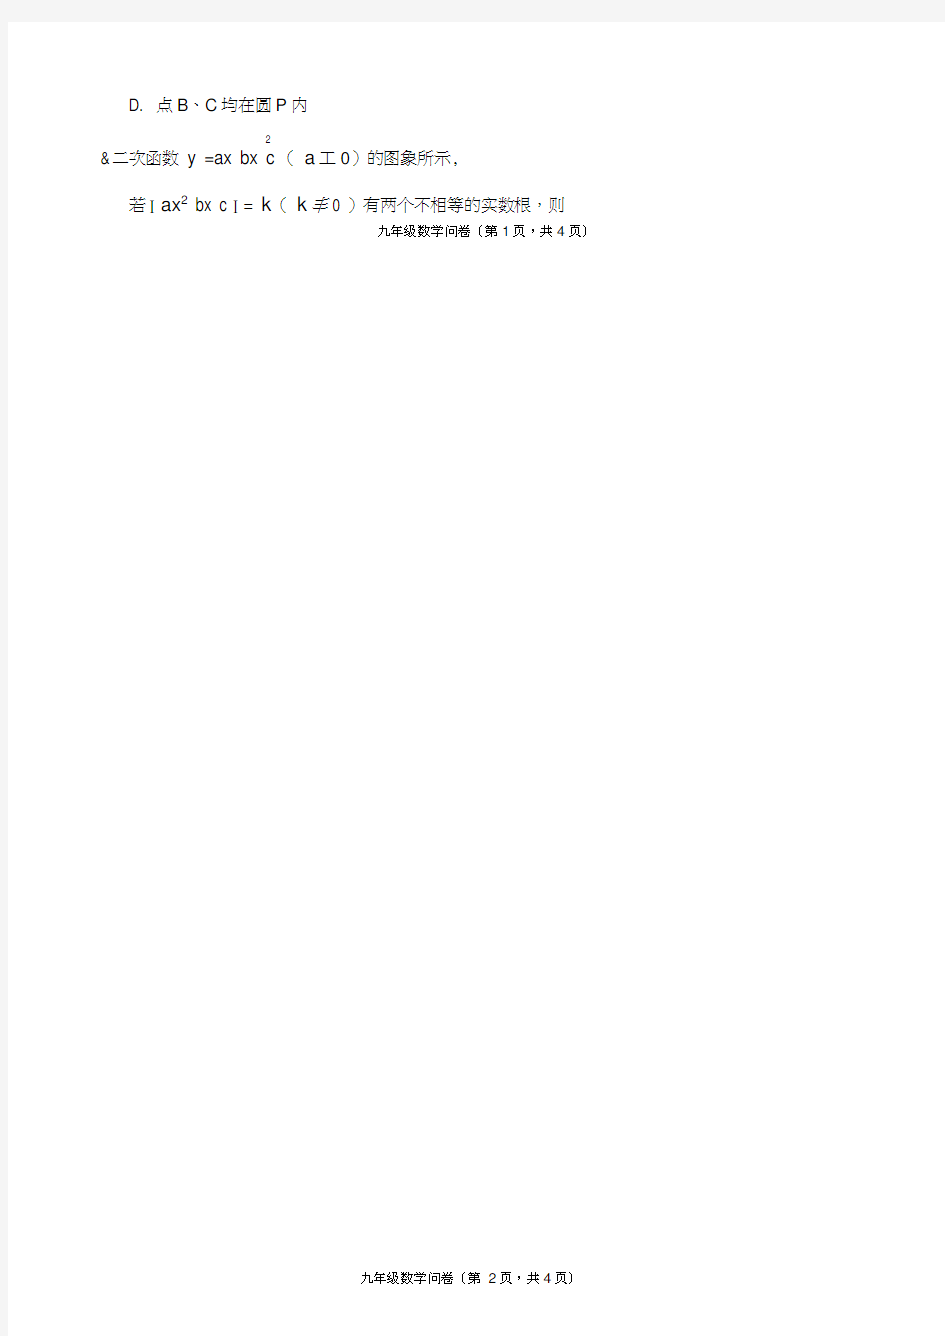 浙江省富阳市新登镇中学2015年九年级第一学期单元问卷数学试卷